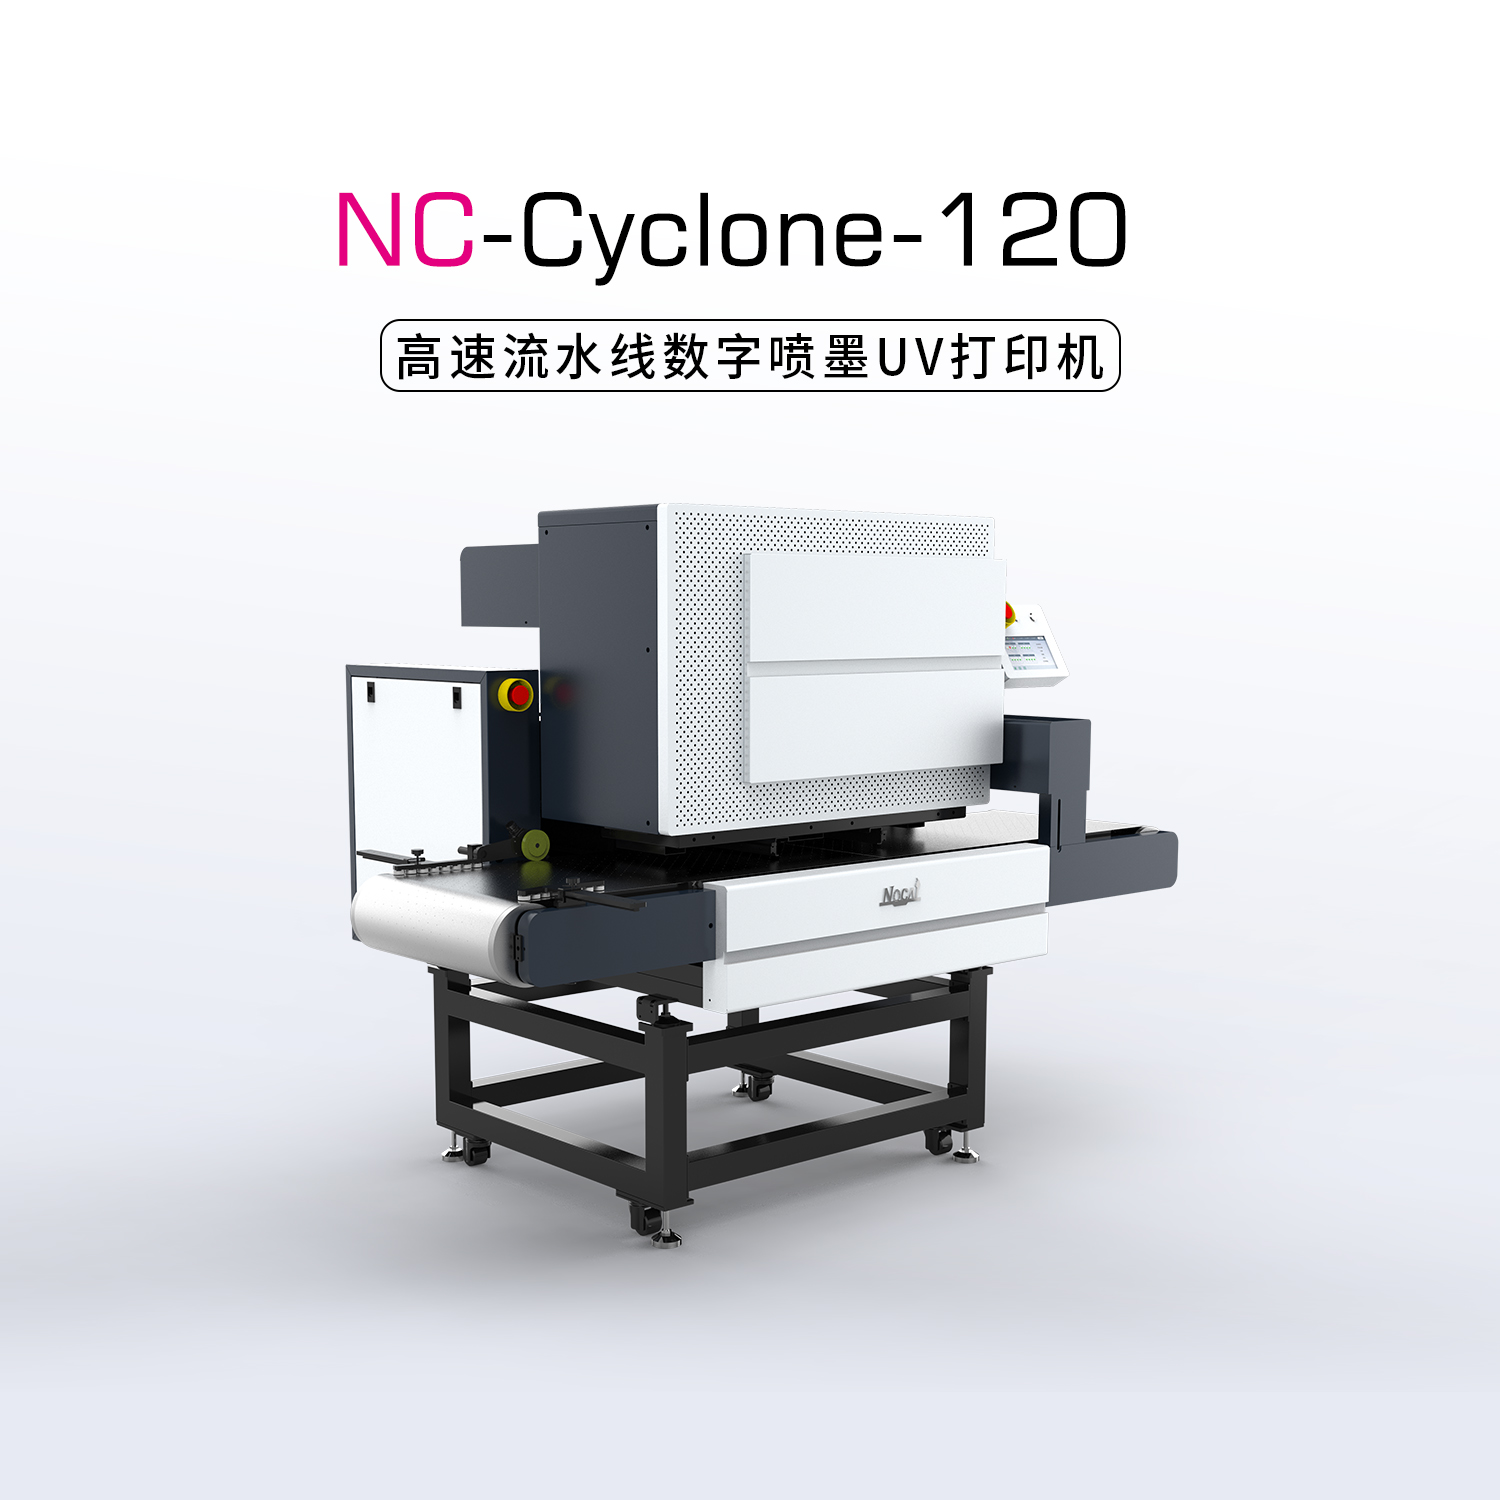 NC-Cyclone-120(S3200)